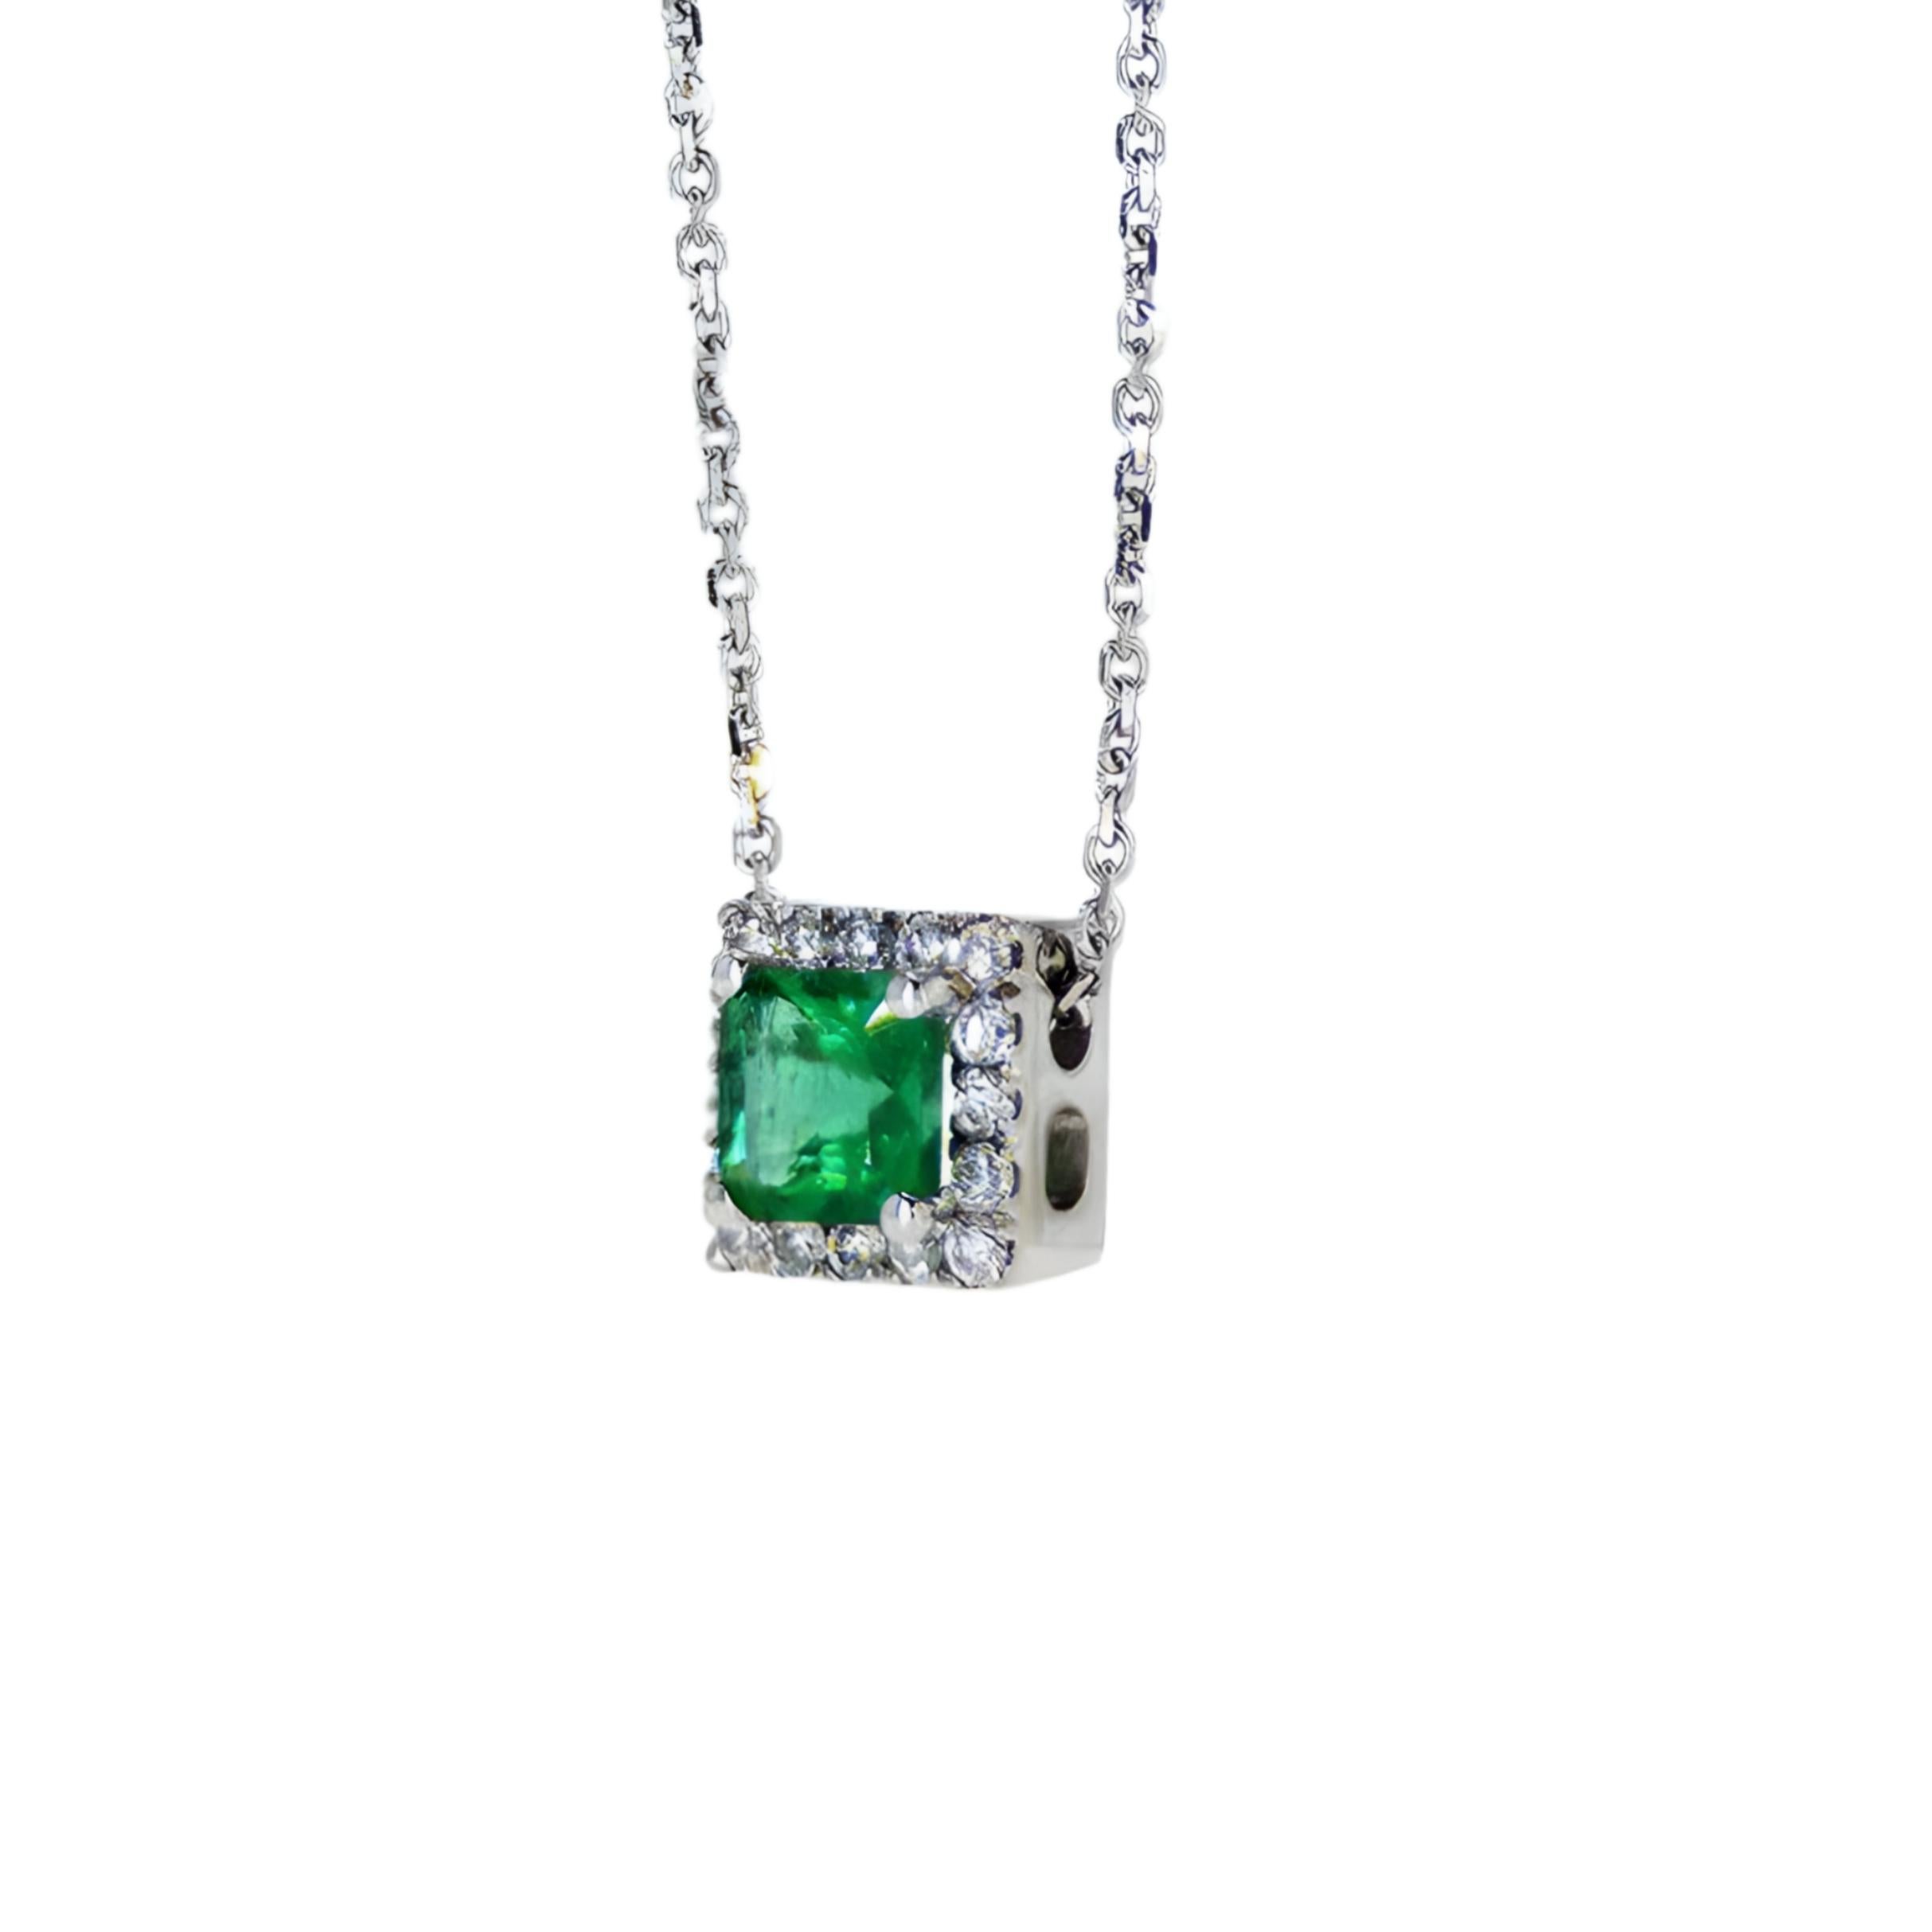 Smaragdform Natürlicher Smaragd und Diamant-Halo-Halskette in 14K Gold

Beschreibung des Produkts:

Wir präsentieren unsere Smaragdkette in Smaragdform, bei der königliche Eleganz auf modernes Design trifft. Diese außergewöhnliche Halskette